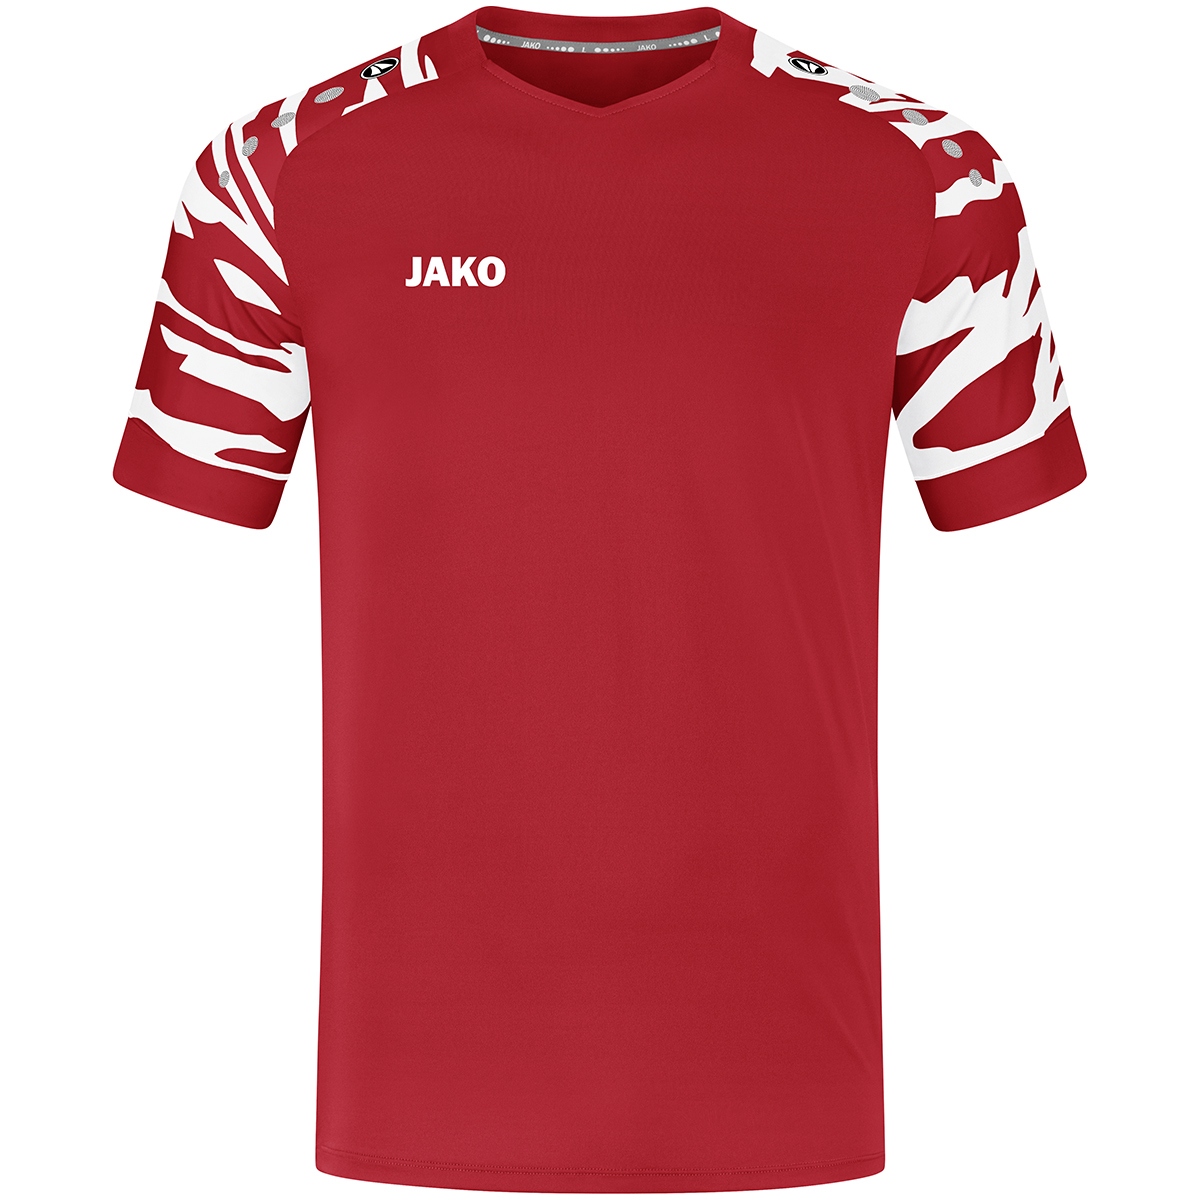 JAKO Shirt Wild KM 4244-112 product